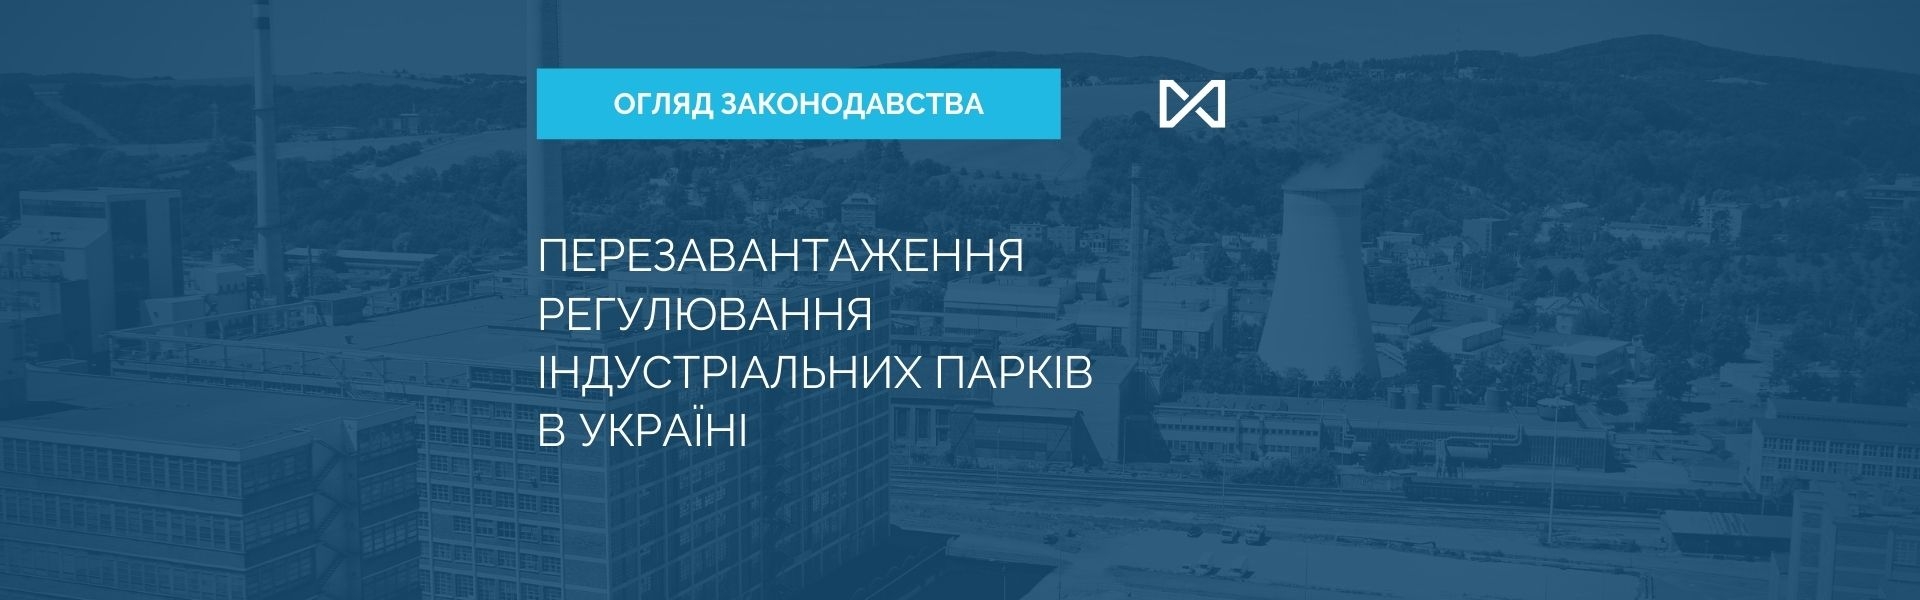 Updates in Regulation of Industrial Parks in Ukraine